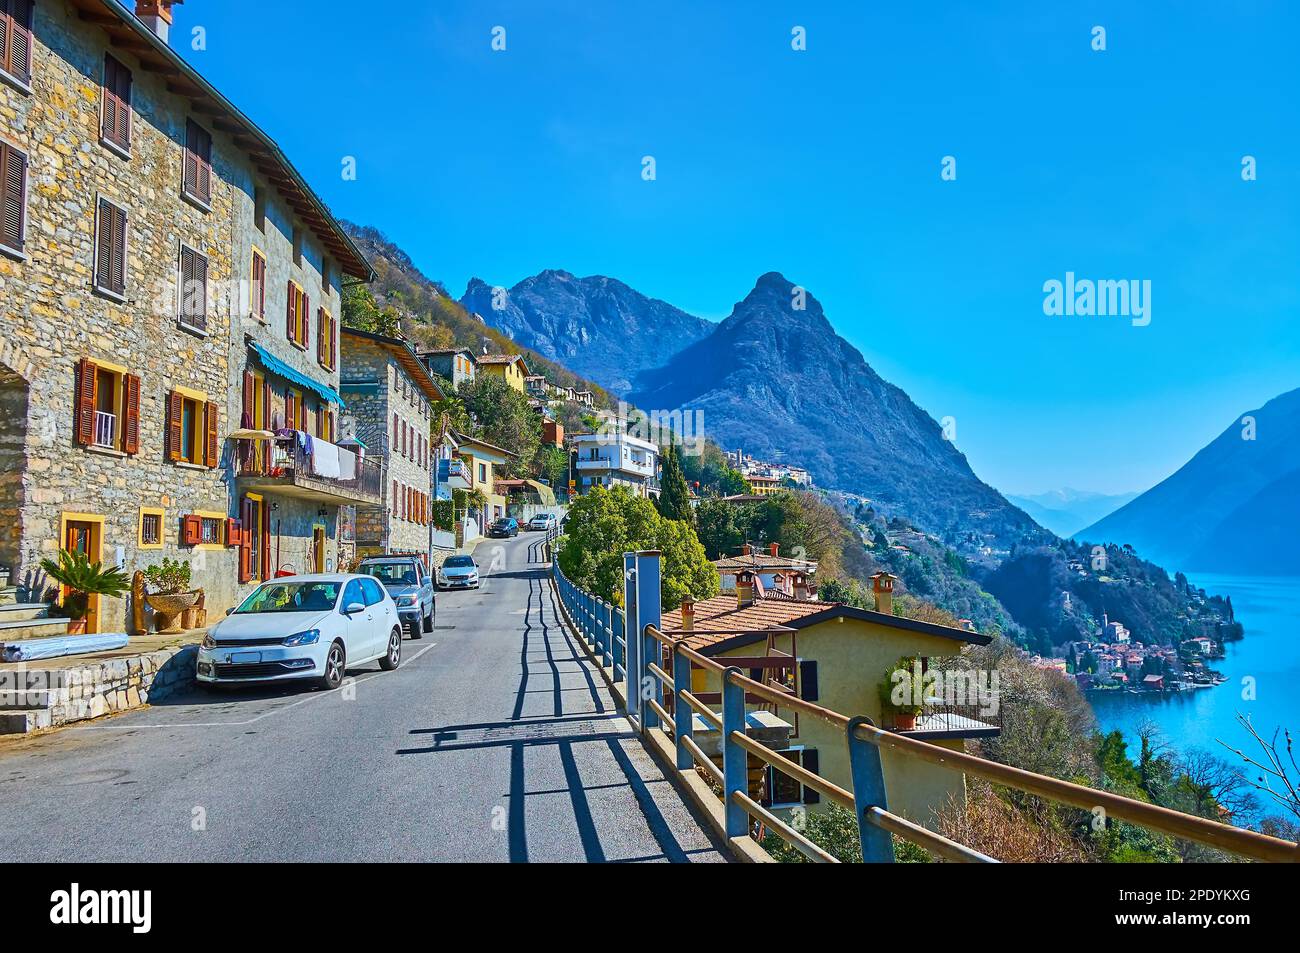 Le village montagnard d'Albogasio offre une vue sur la montagne et le lac de Lugano, à Valsolda, en Italie Banque D'Images